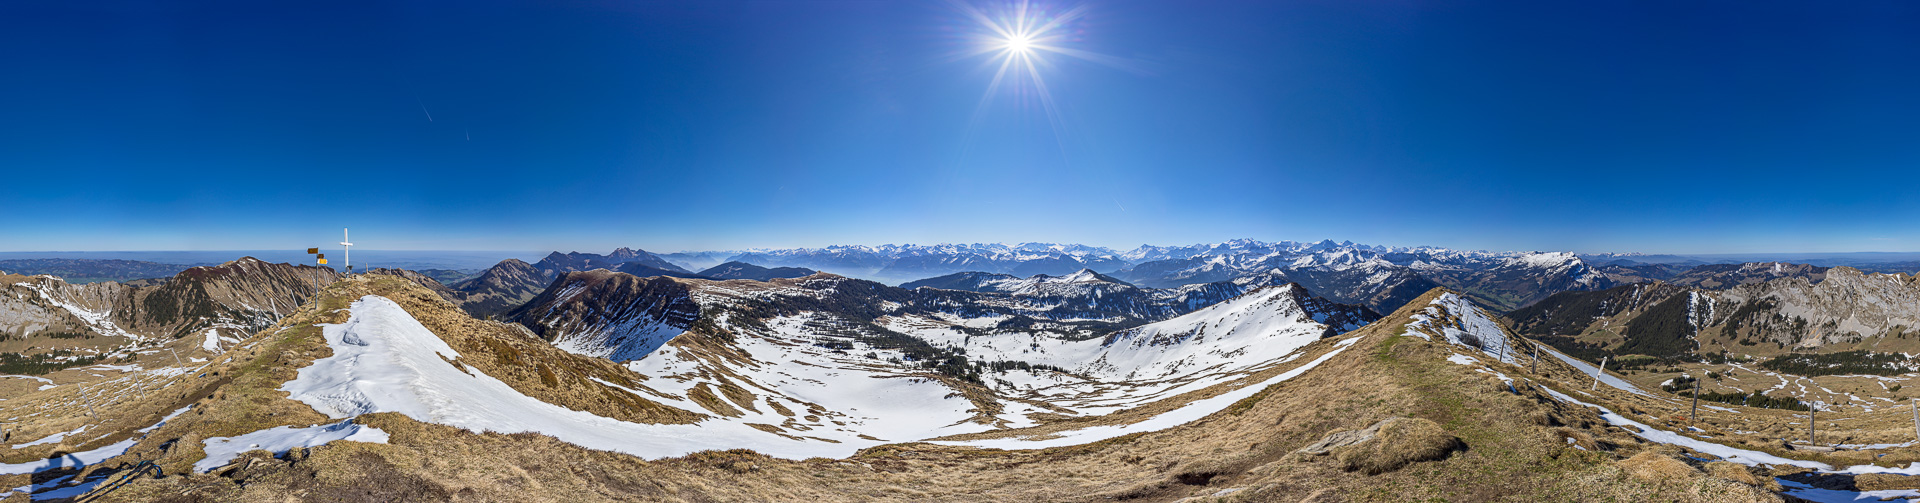 Emmental-Panorama mit den Glarner und Berner Alpen.